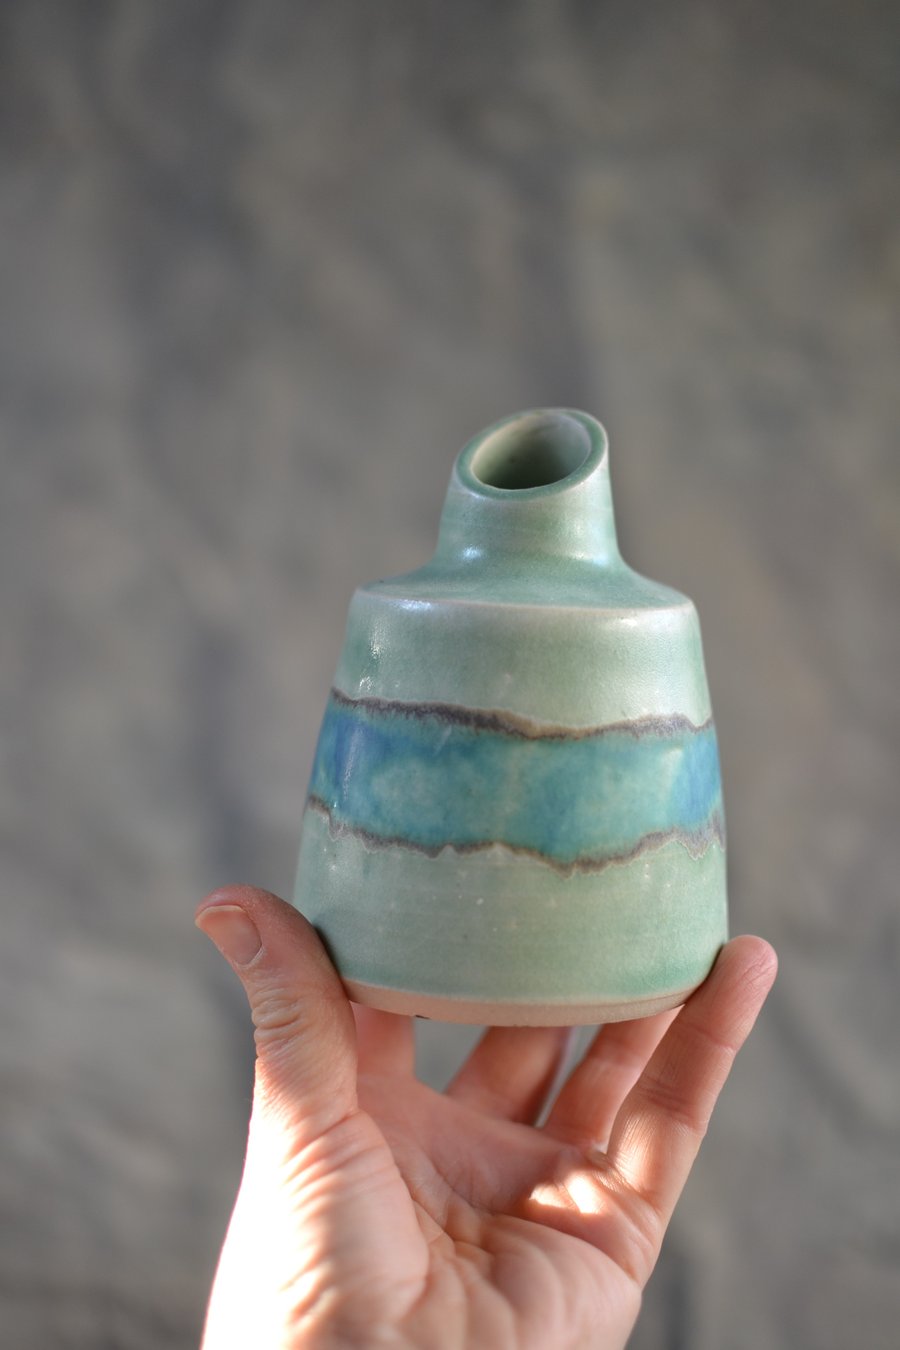 Medium Skyline ceramic bottle bud vase - glazed in turquoise, greens and blues